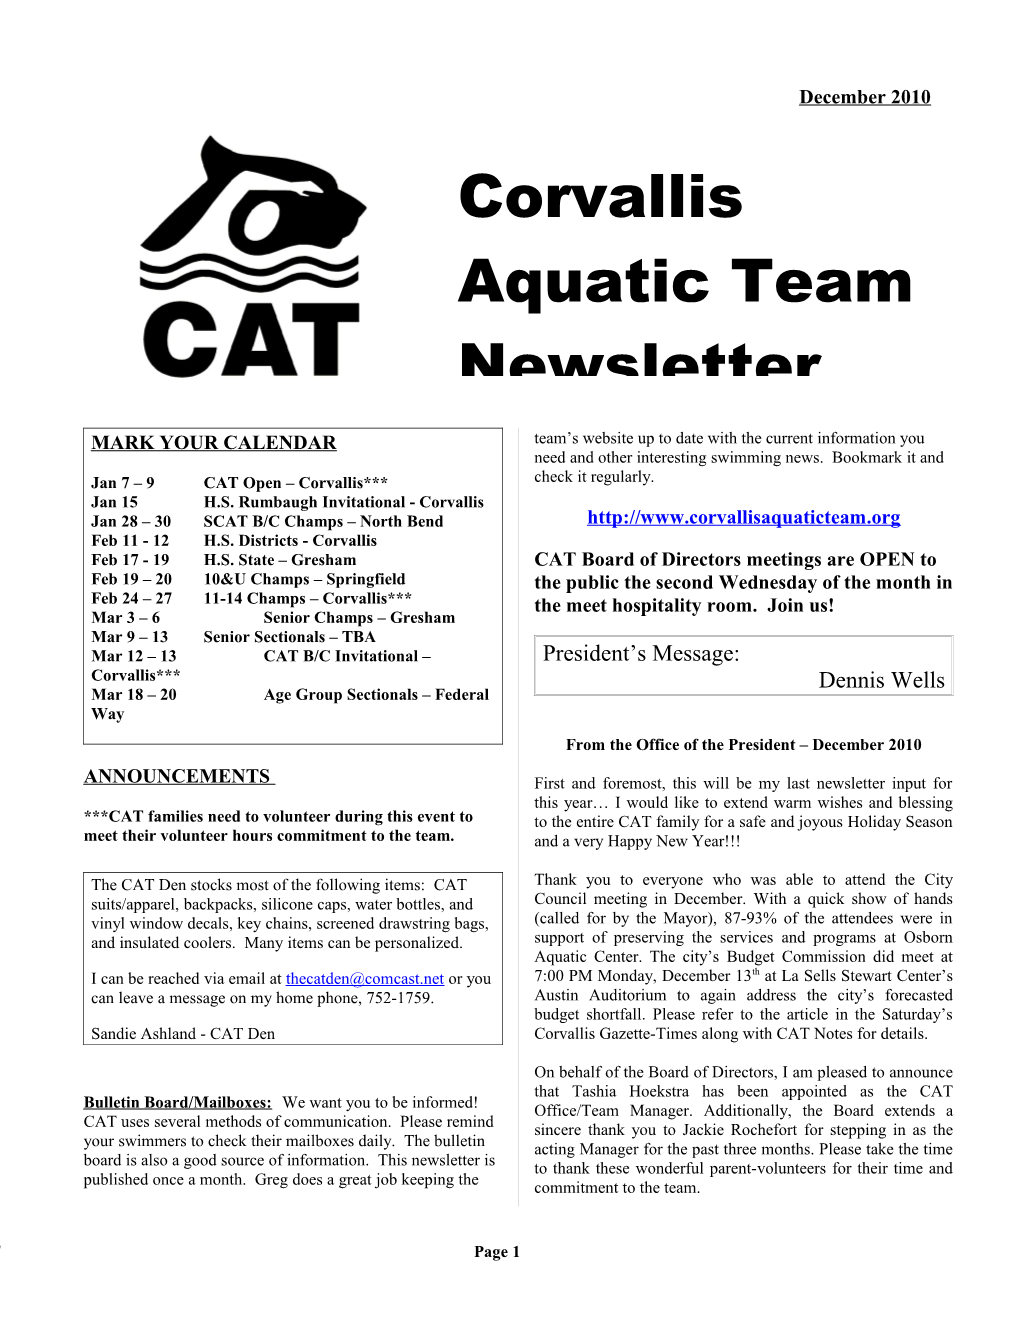 Jan 7 9 CAT Open Corvallis